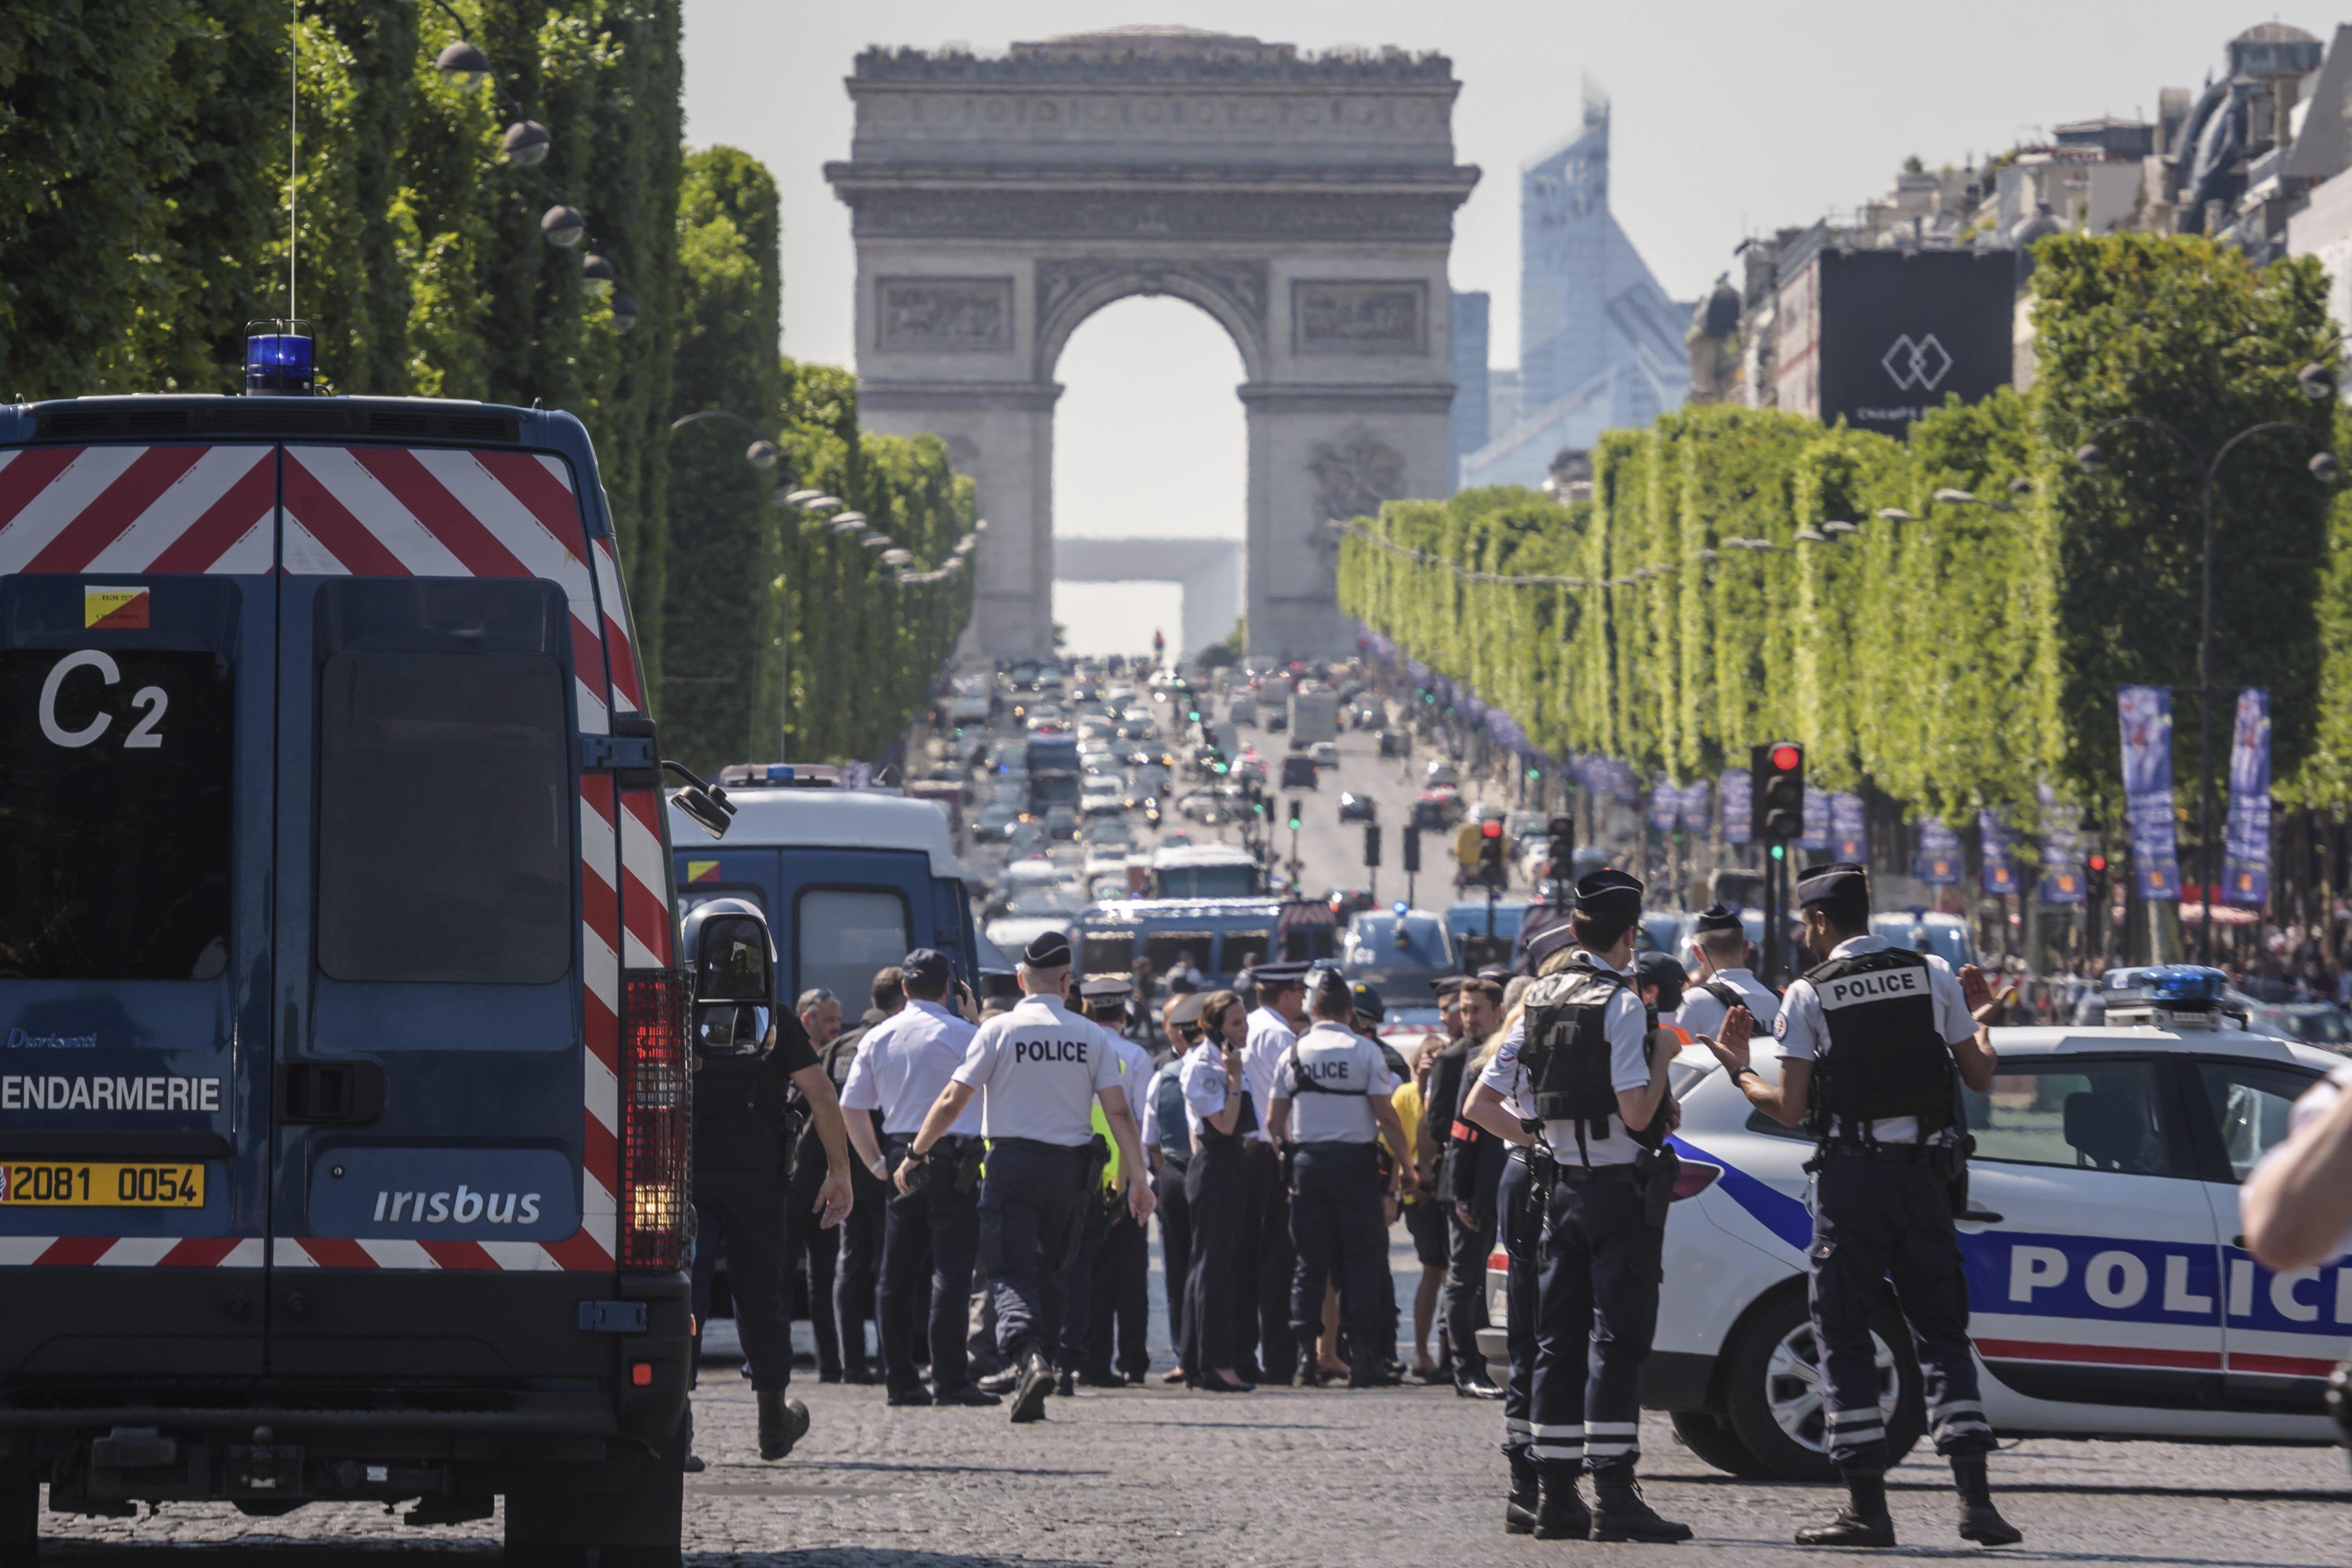 Un home armat estavella el seu cotxe contra un furgó policial a París